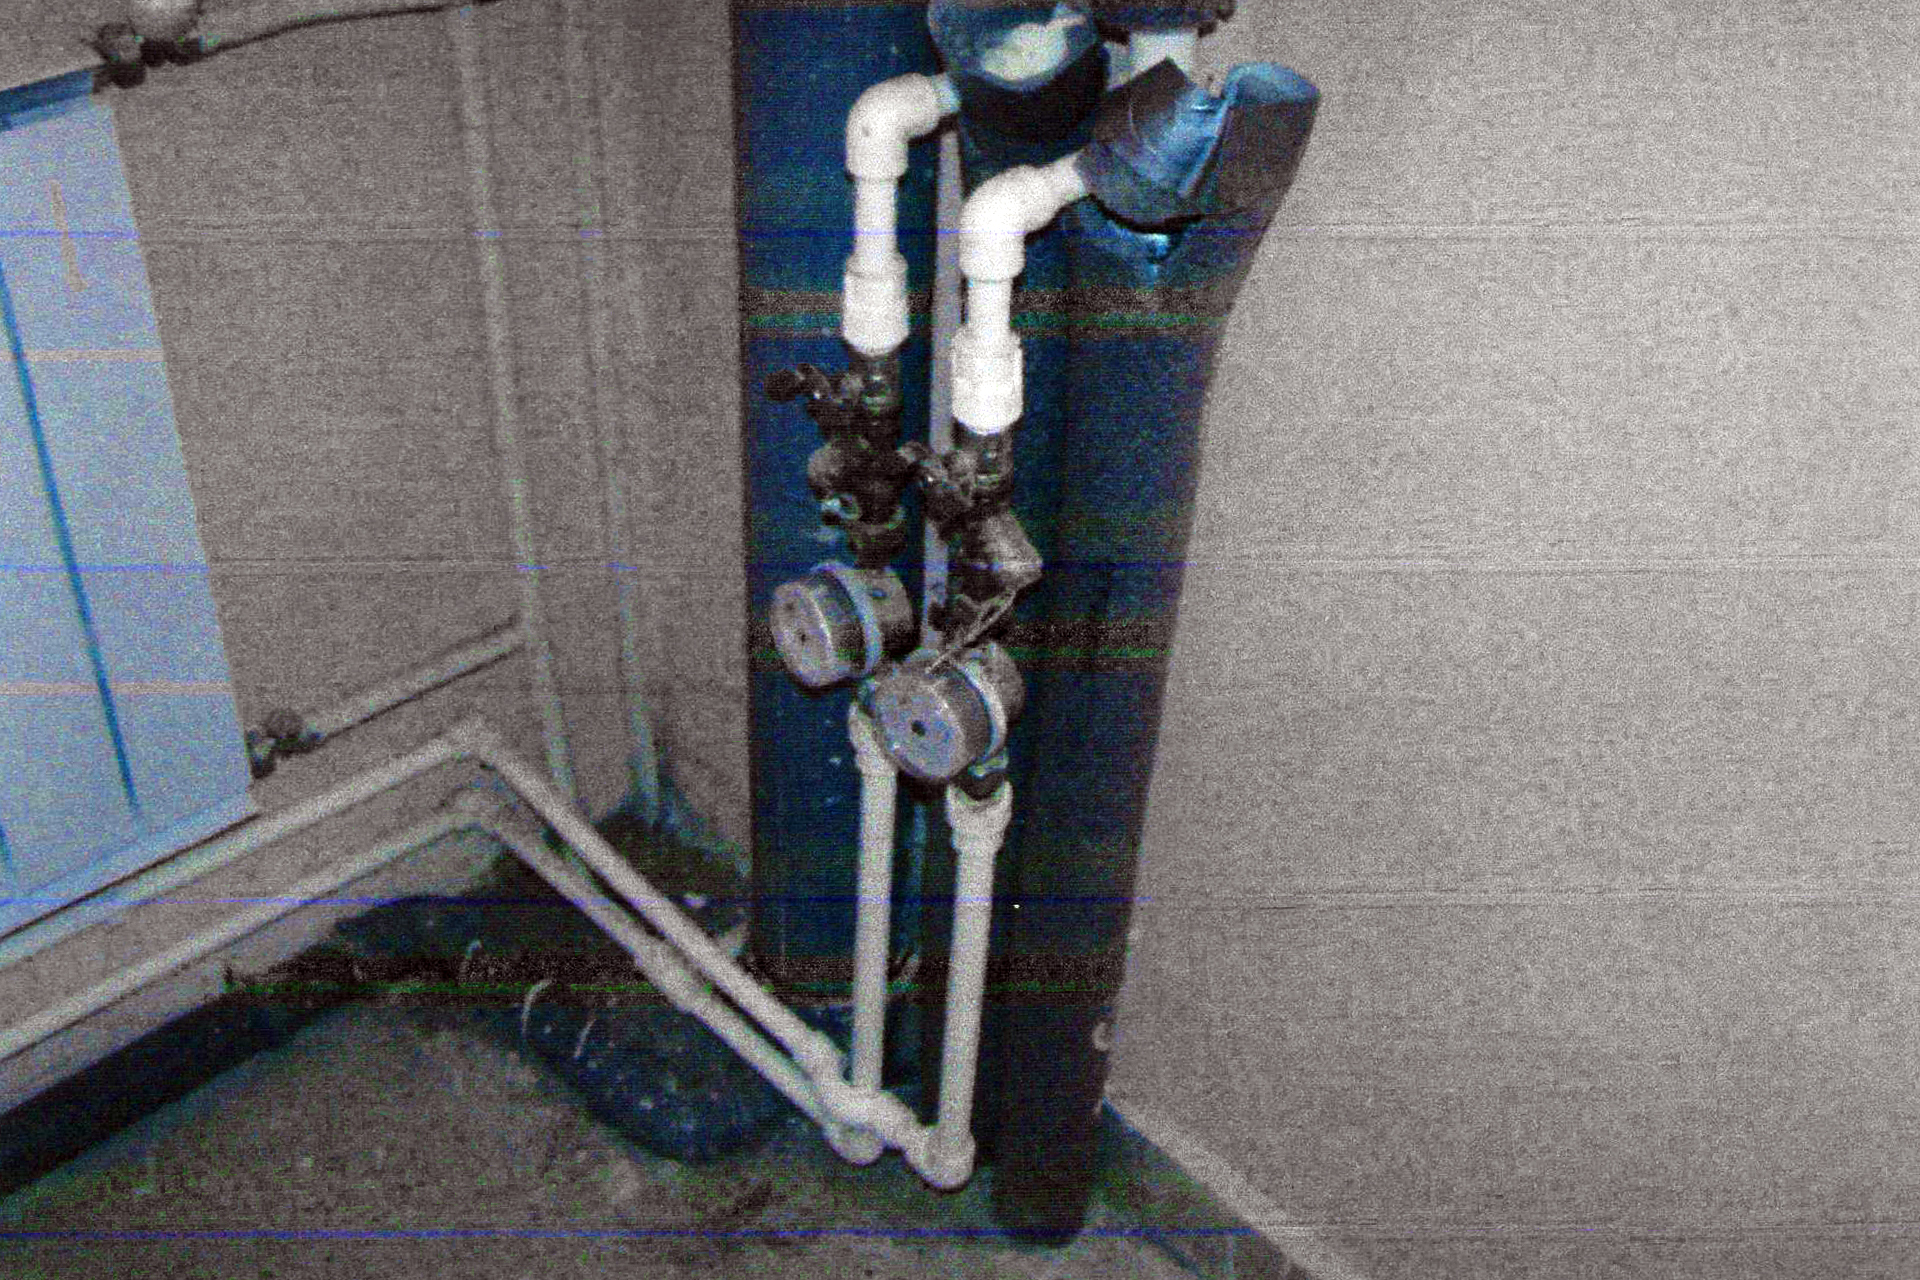 Трубы горячего и холодного водоснабжения со счетчиками положено прятать в специальный технологический шкаф